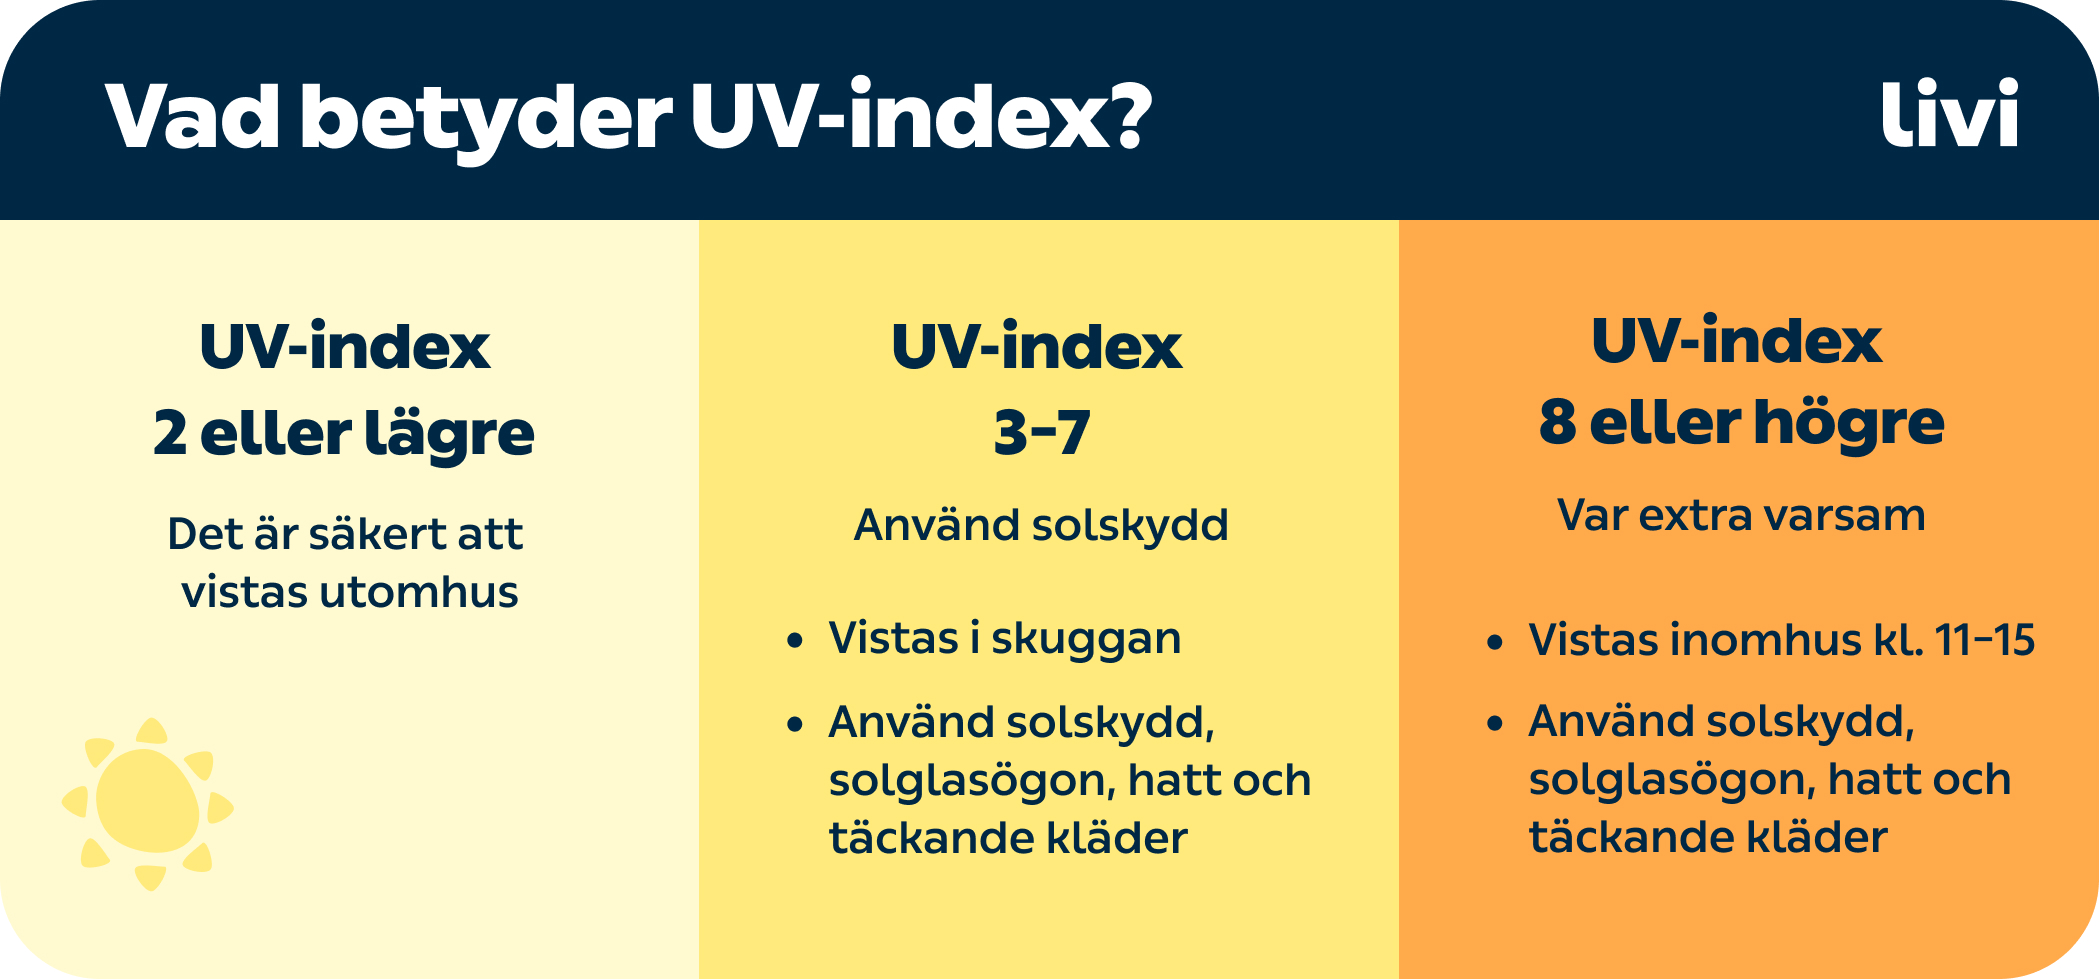 kry.se > Din hälsa > Säkerhet i solen > Chart